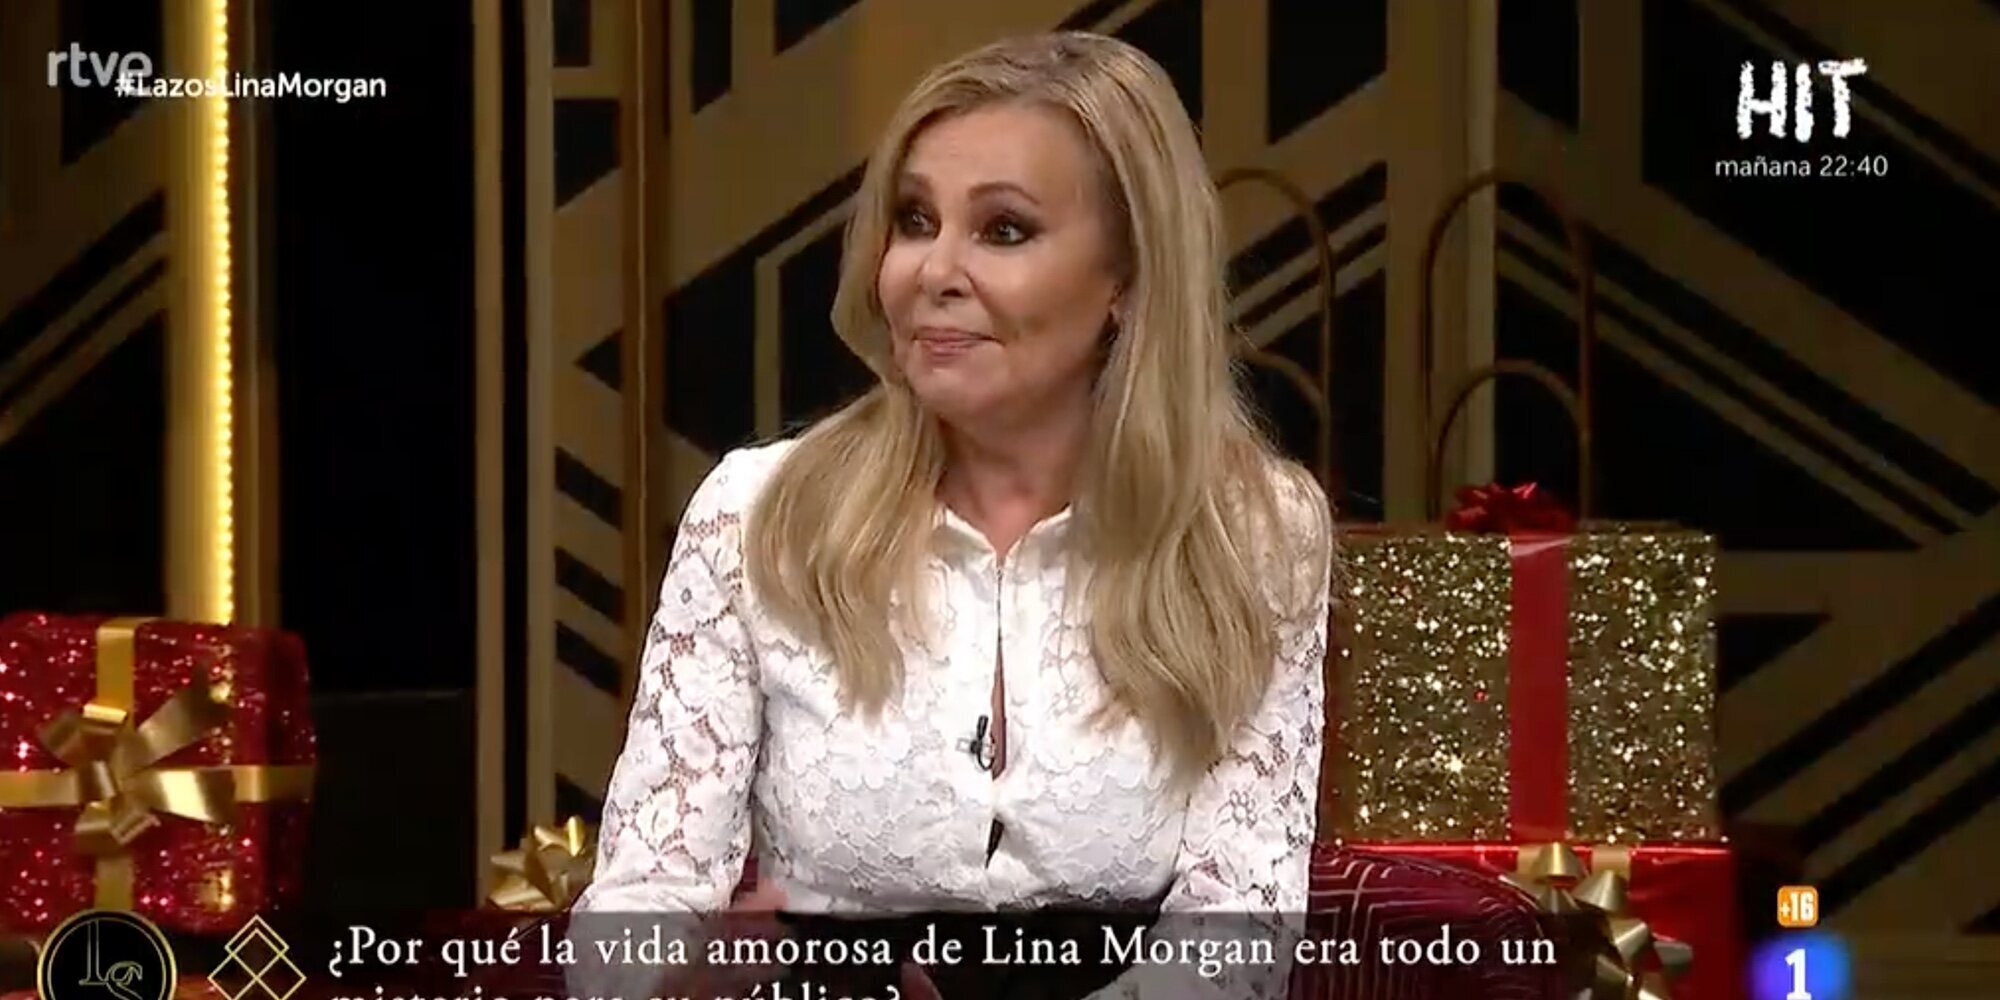 Ana Obregón reaparece en un plató de televisión en directo tras la muerte de su hijo para hablar de Lina Morgan